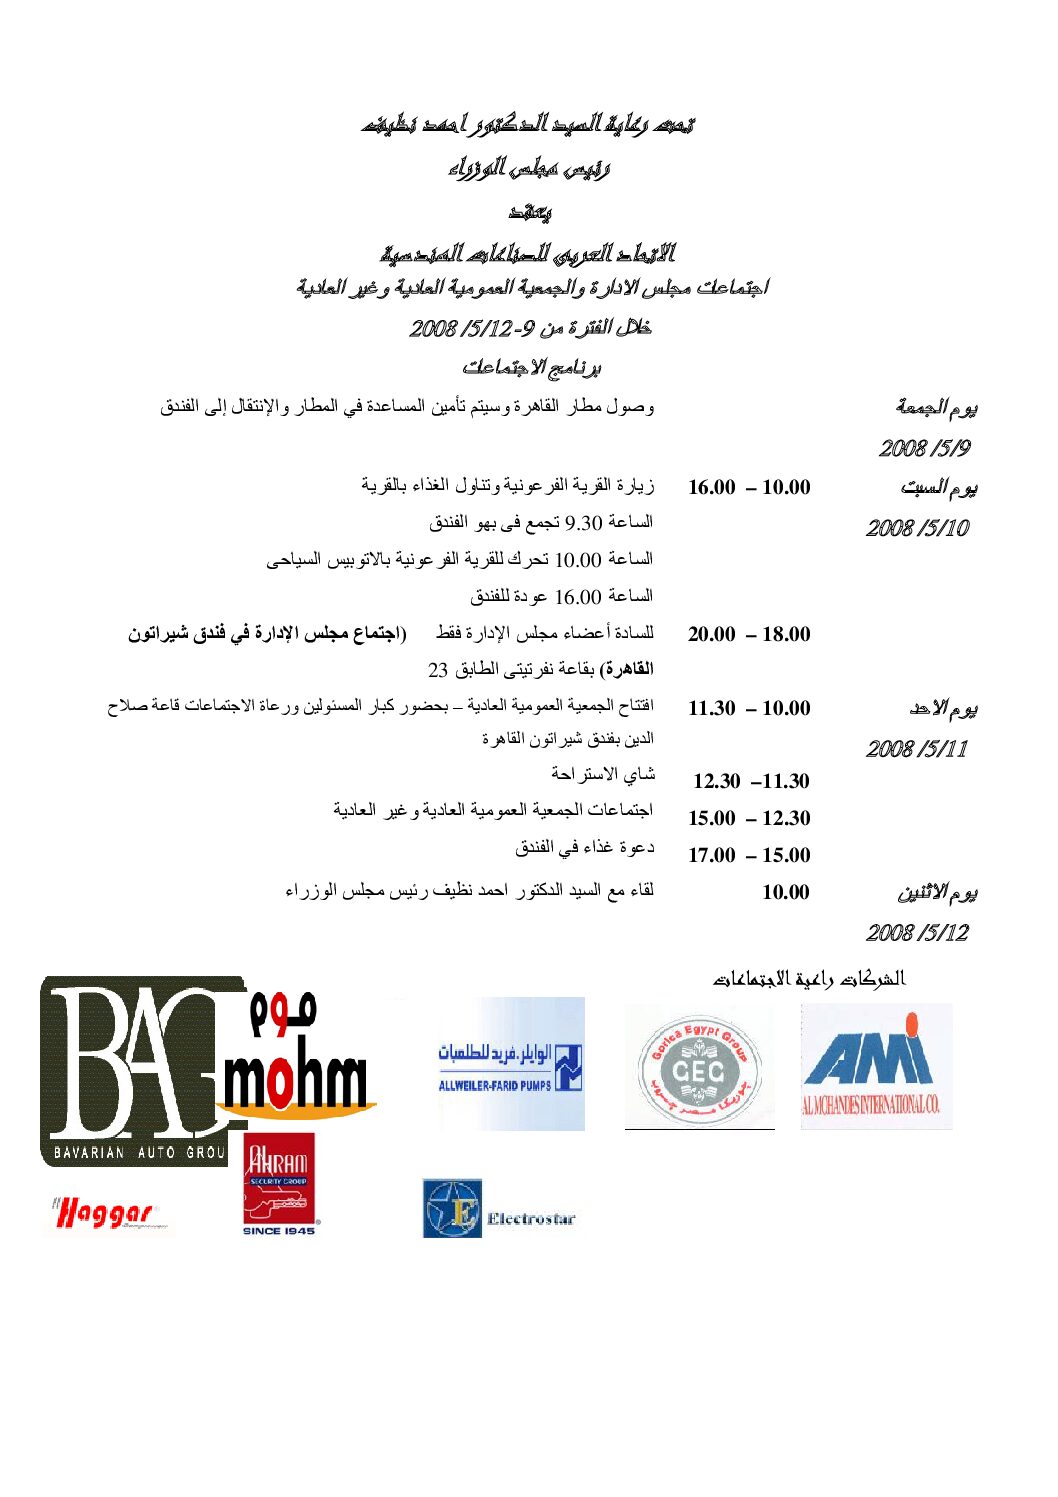 اجتماع الجمعية العمومية العادية للاتحاد العربي للصناعات الهندسية-5/10/2008